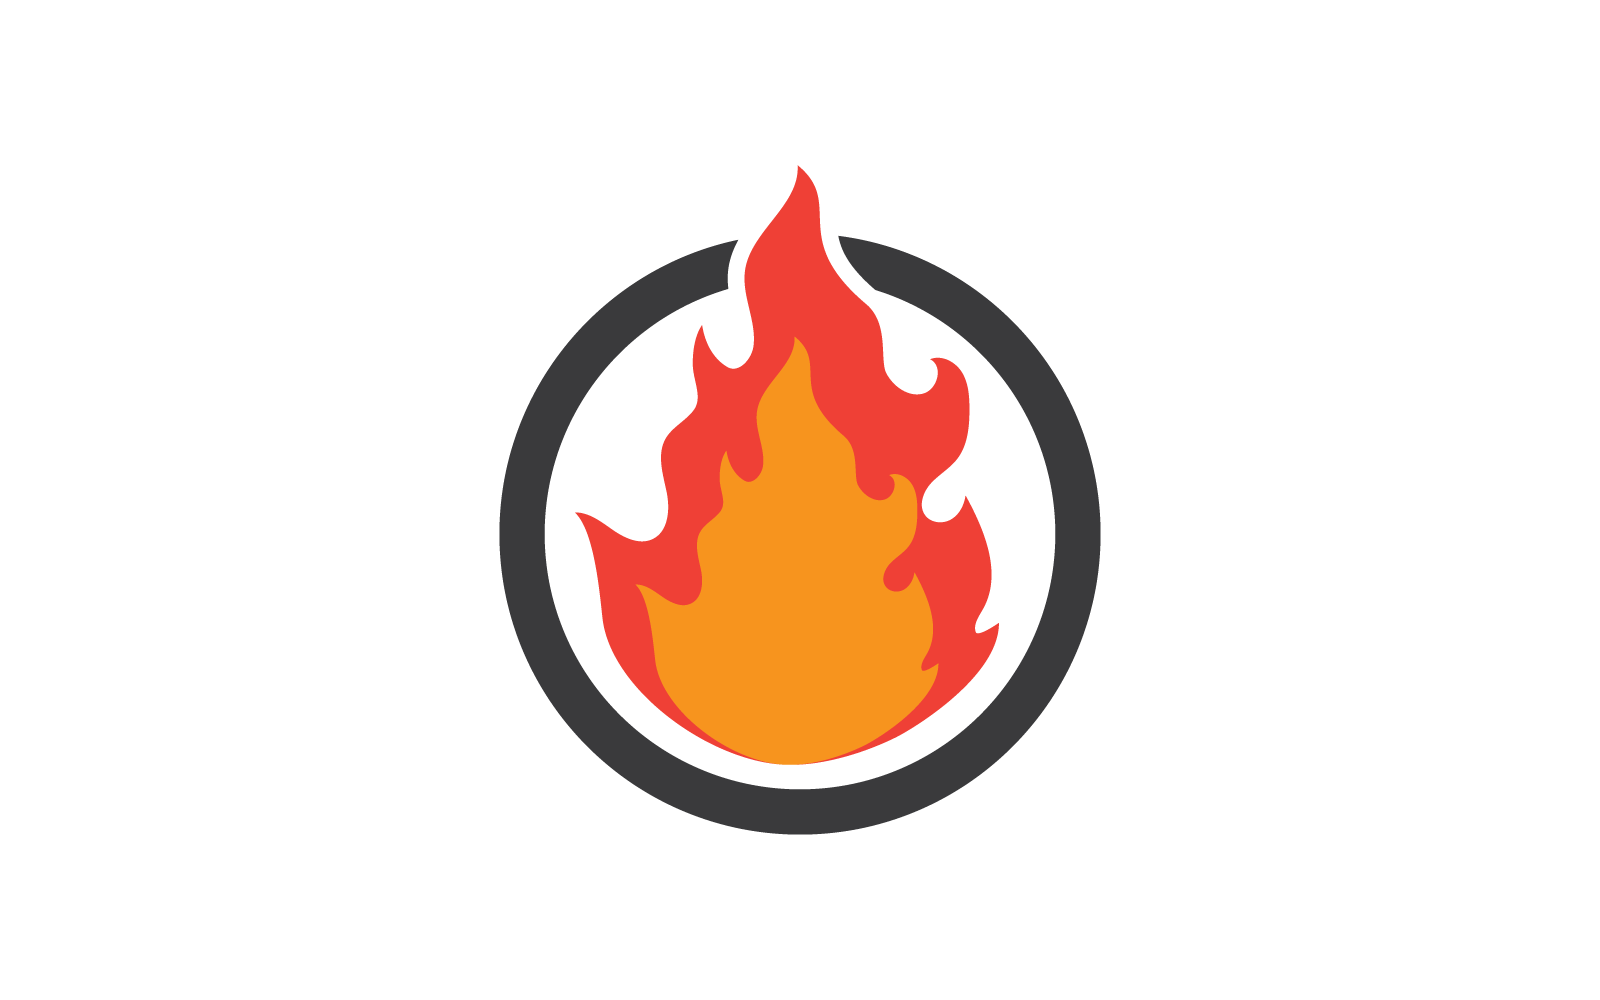 Fire flame Logo vector, Oil, gas and energy logo design concept